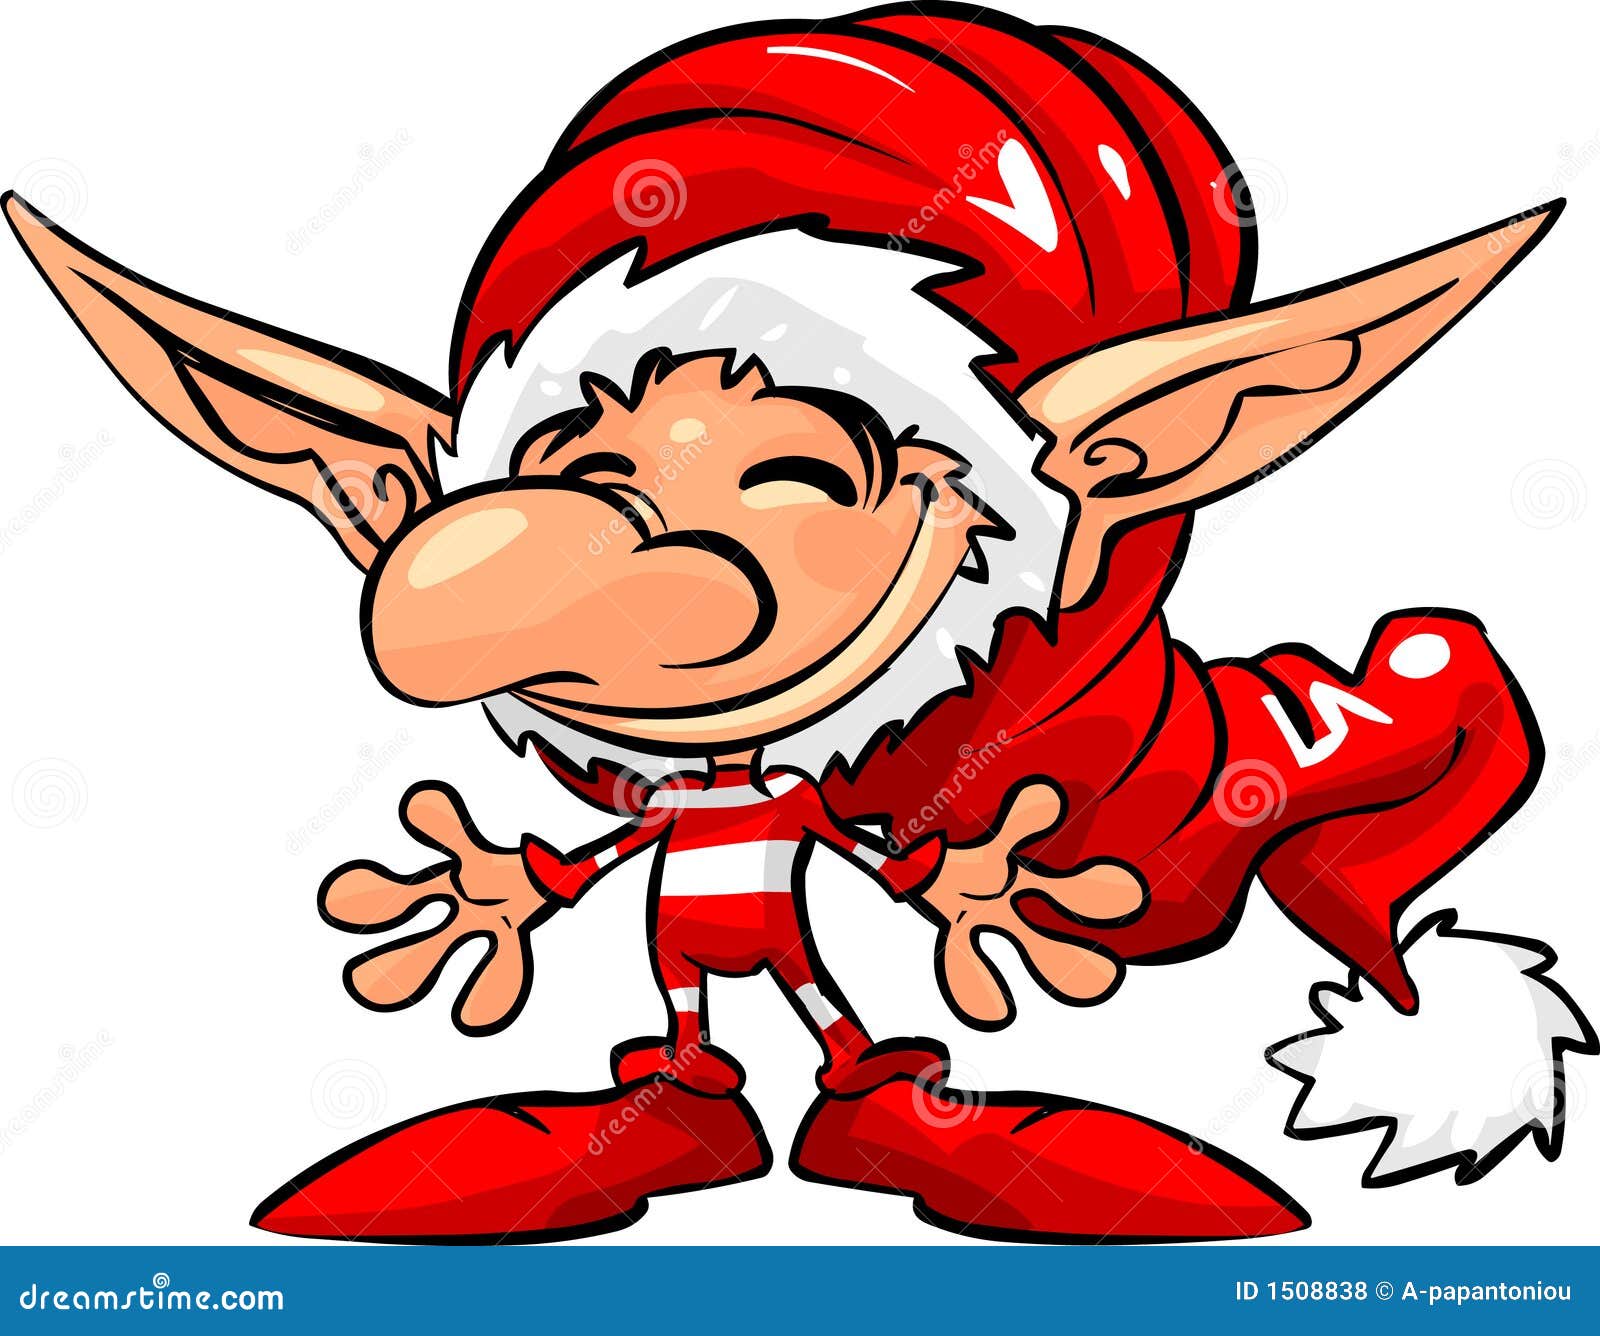 Santa Helper stock illustration. Illustration of devil - 1508838